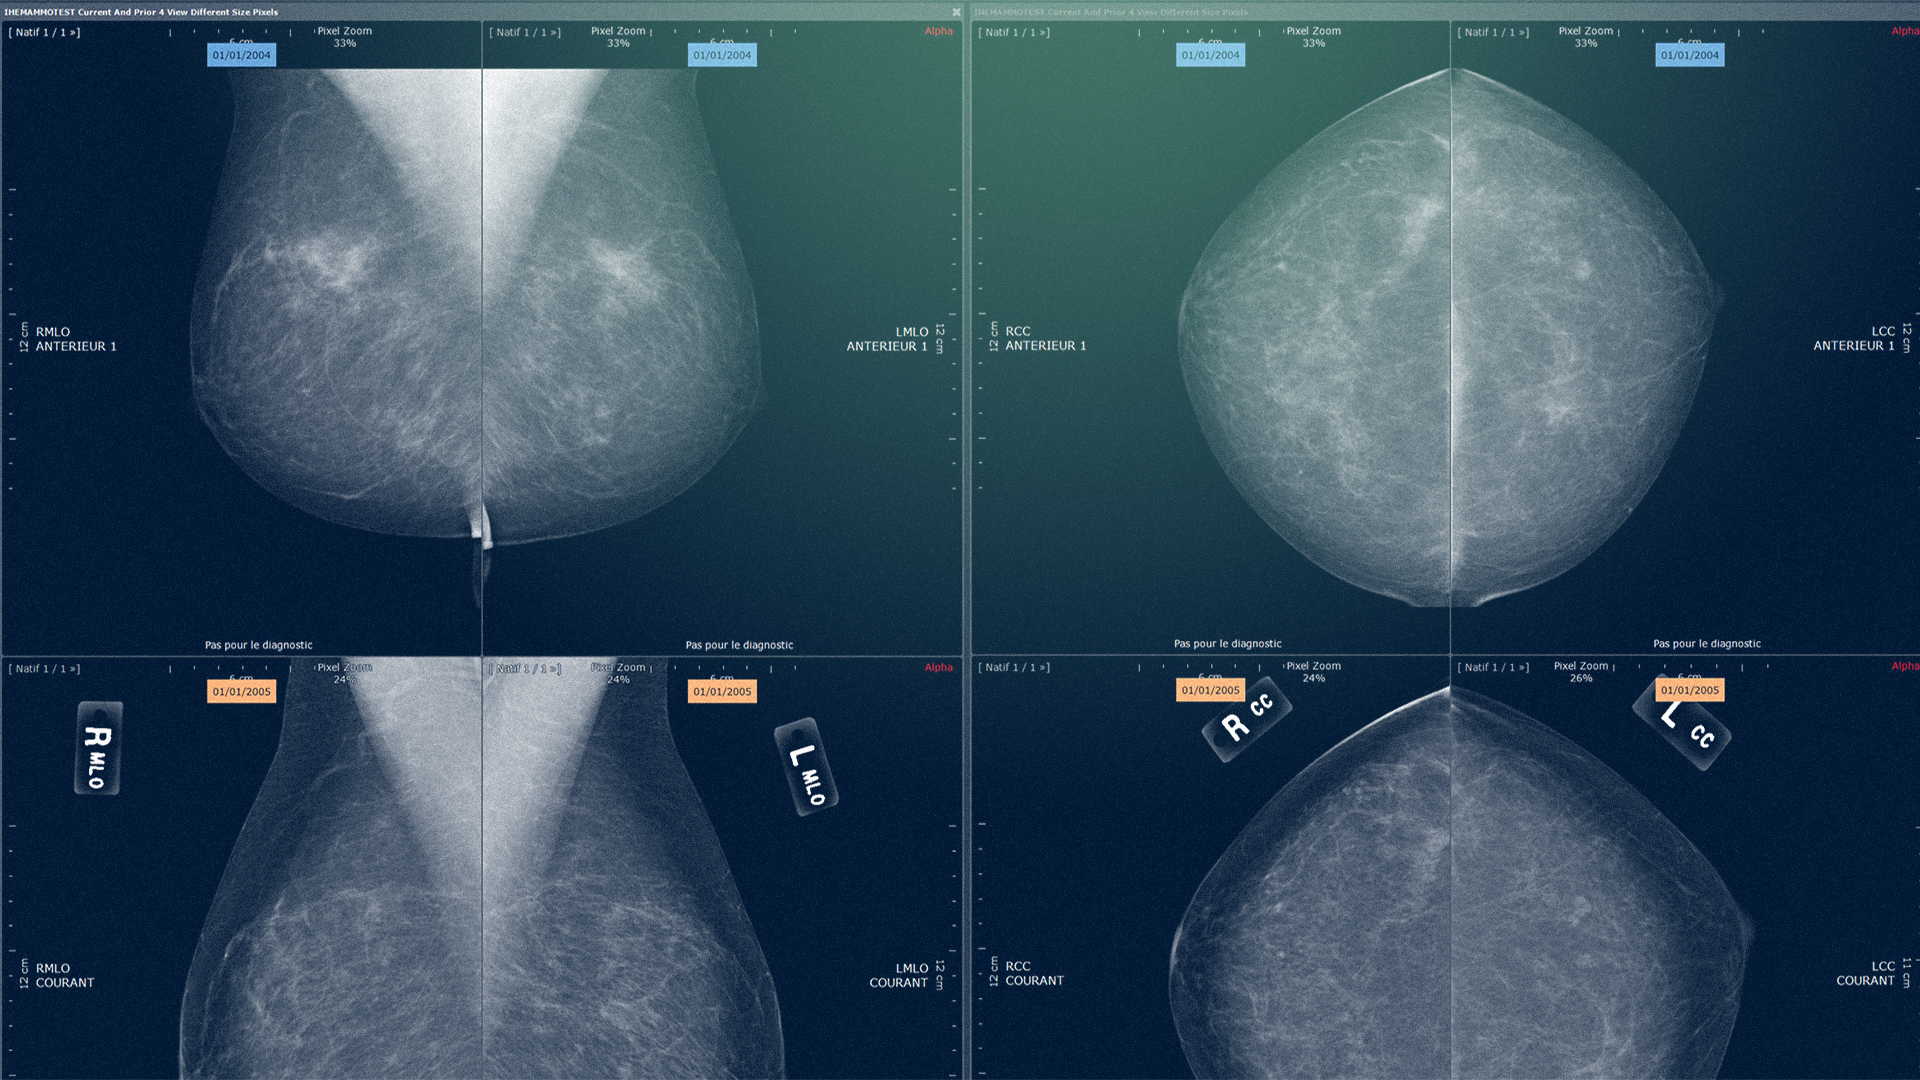 Gros plan sur les résultats d'une mammographie - Imagerie Cancer du Sein - Intrasense - Logiciel Imagerie Médicale, Myrian®